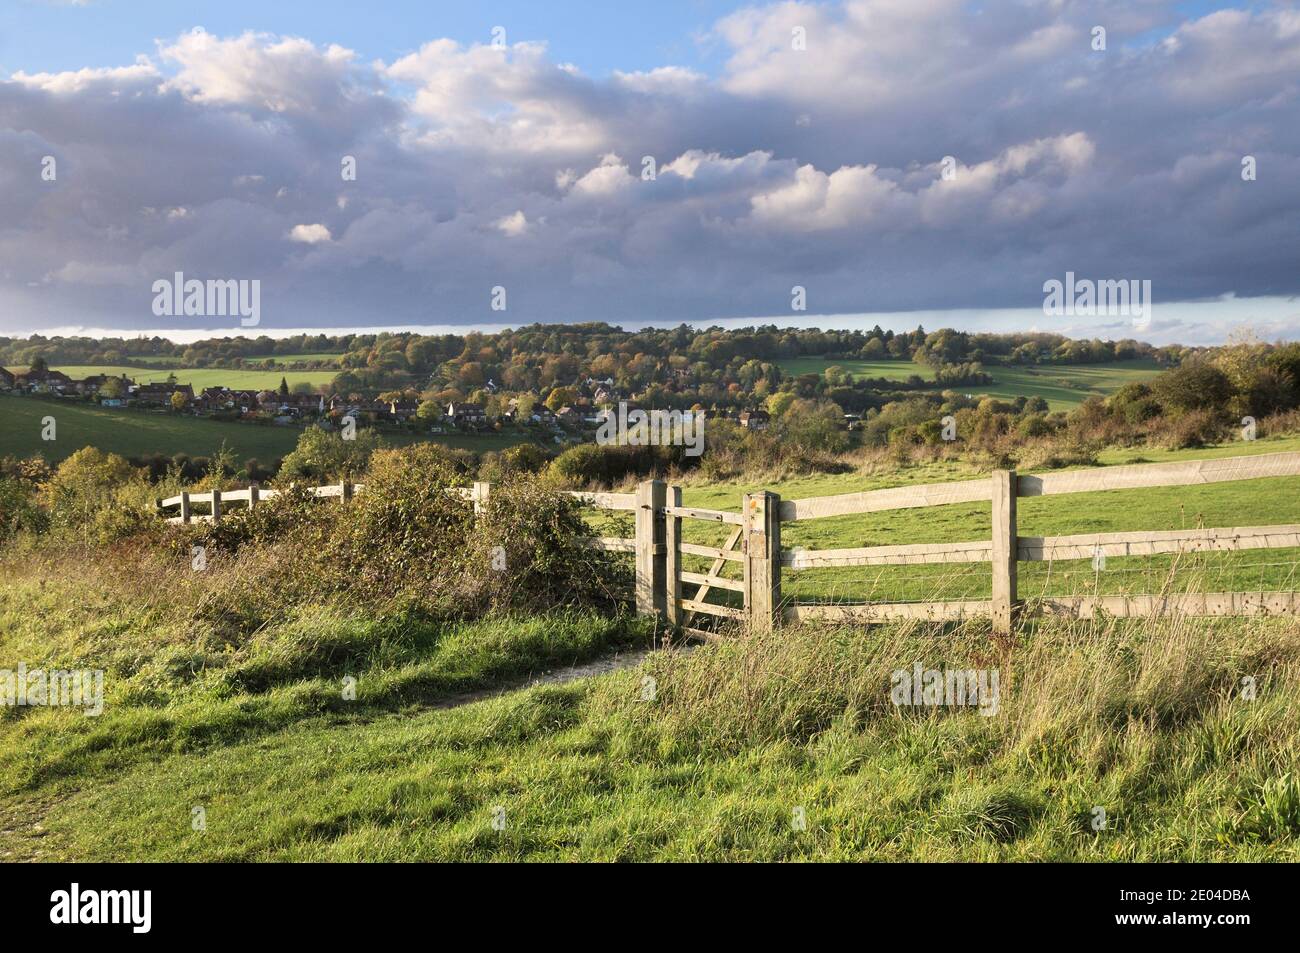 Tor und Zaun auf Farthing Downs, South London Downs National Nature Reserve, mit 121 Hektar Land an der Grenze zu Surrey und Croydon, Großbritannien Stockfoto